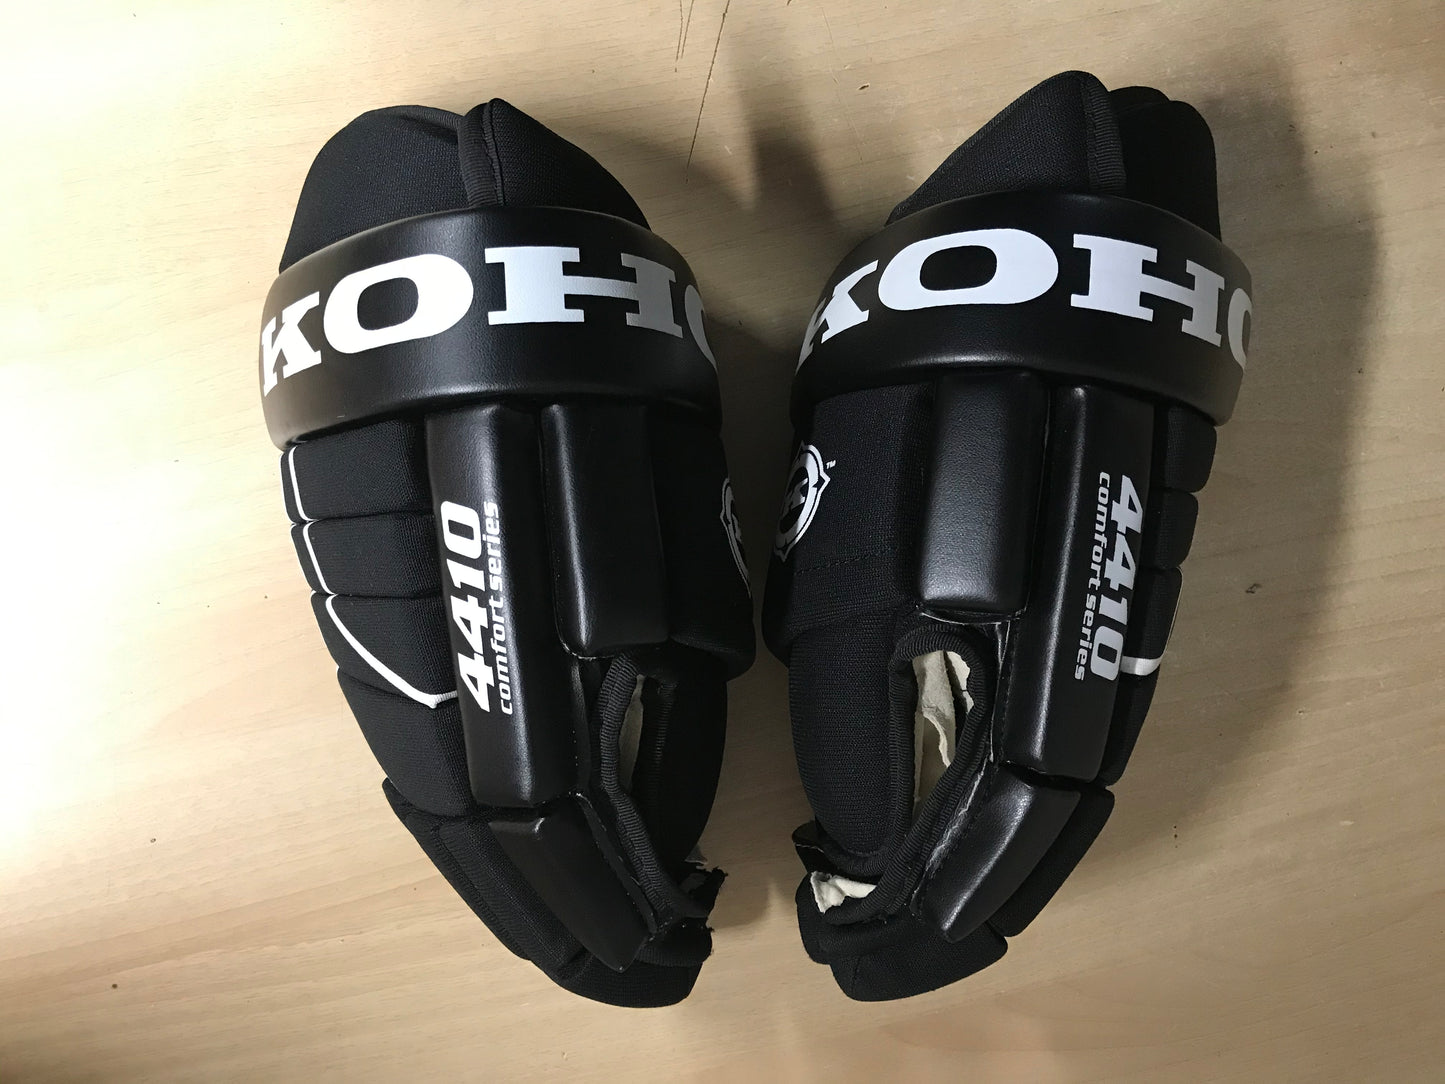 Hockey Gloves Men's Size 15 inch Koho Comfort Series Black As New